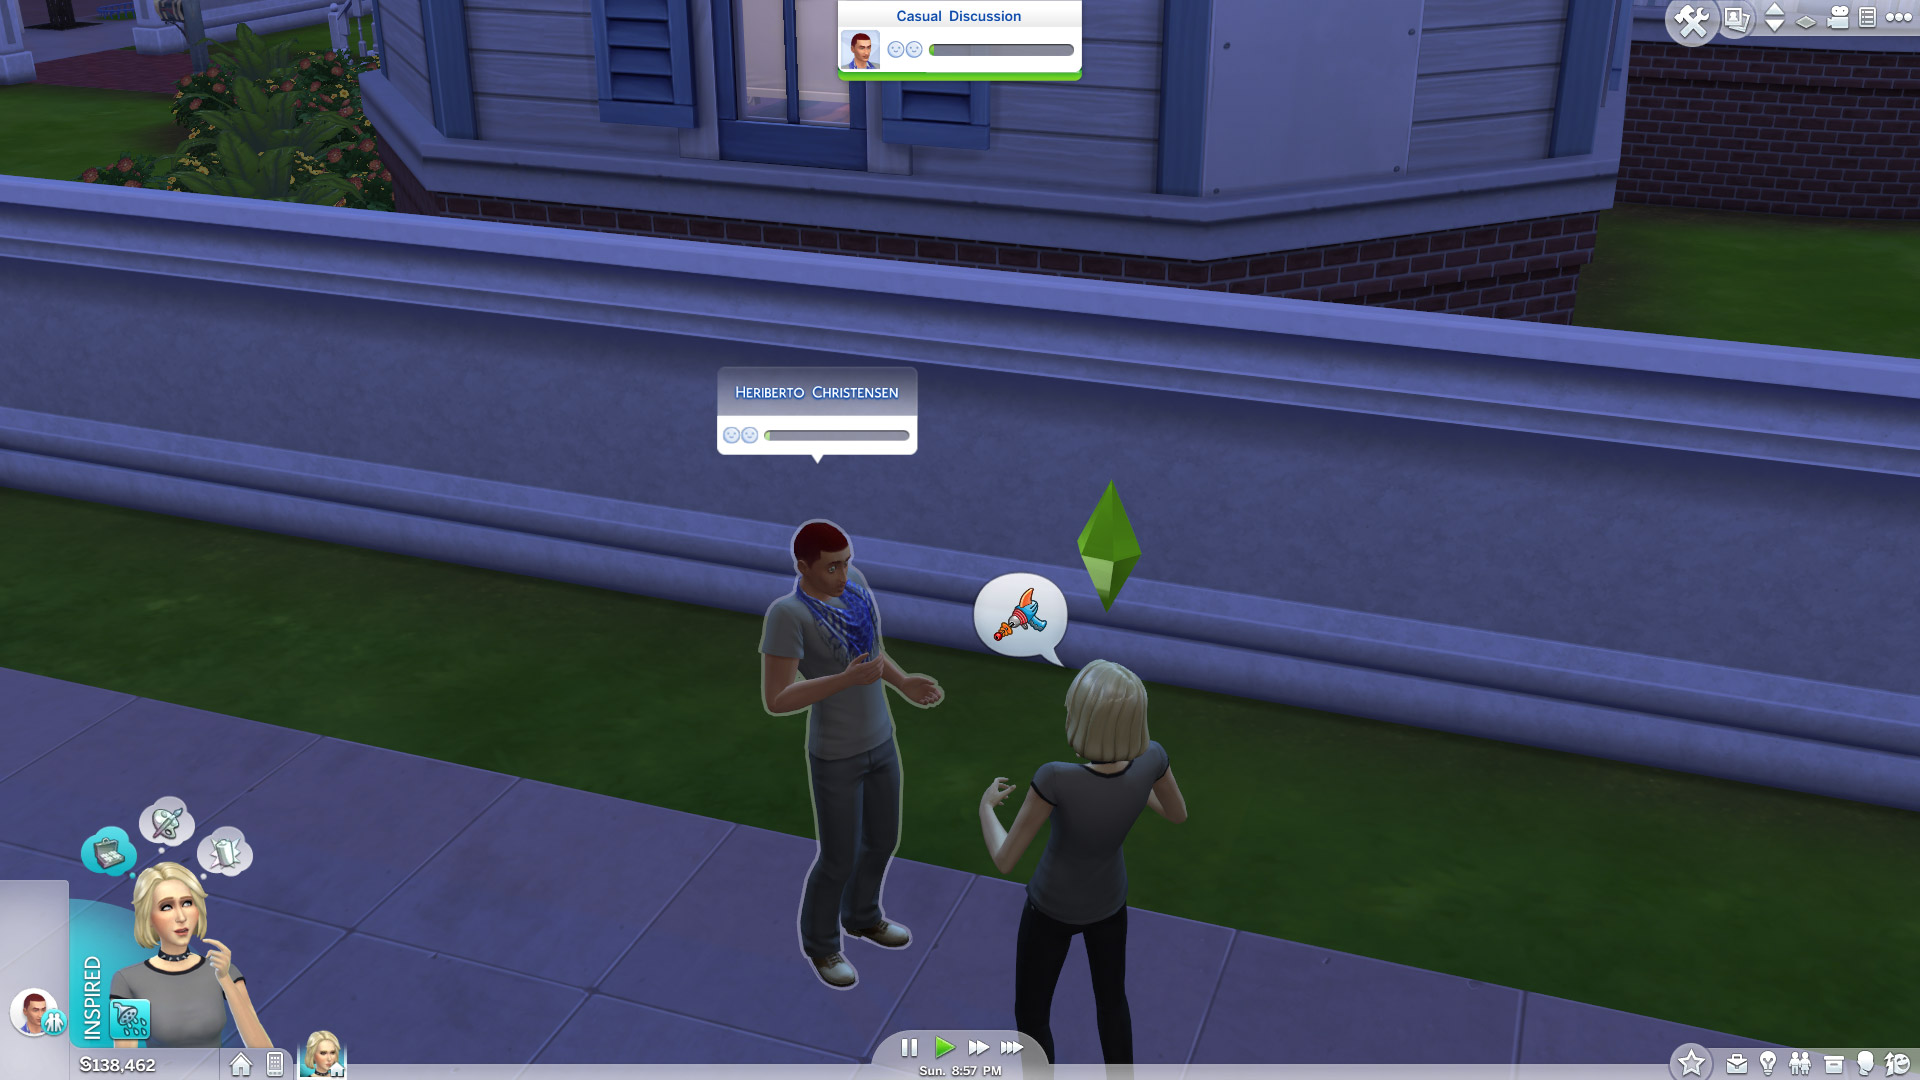 The Sims 4: tudo sobre o jogo de simulação